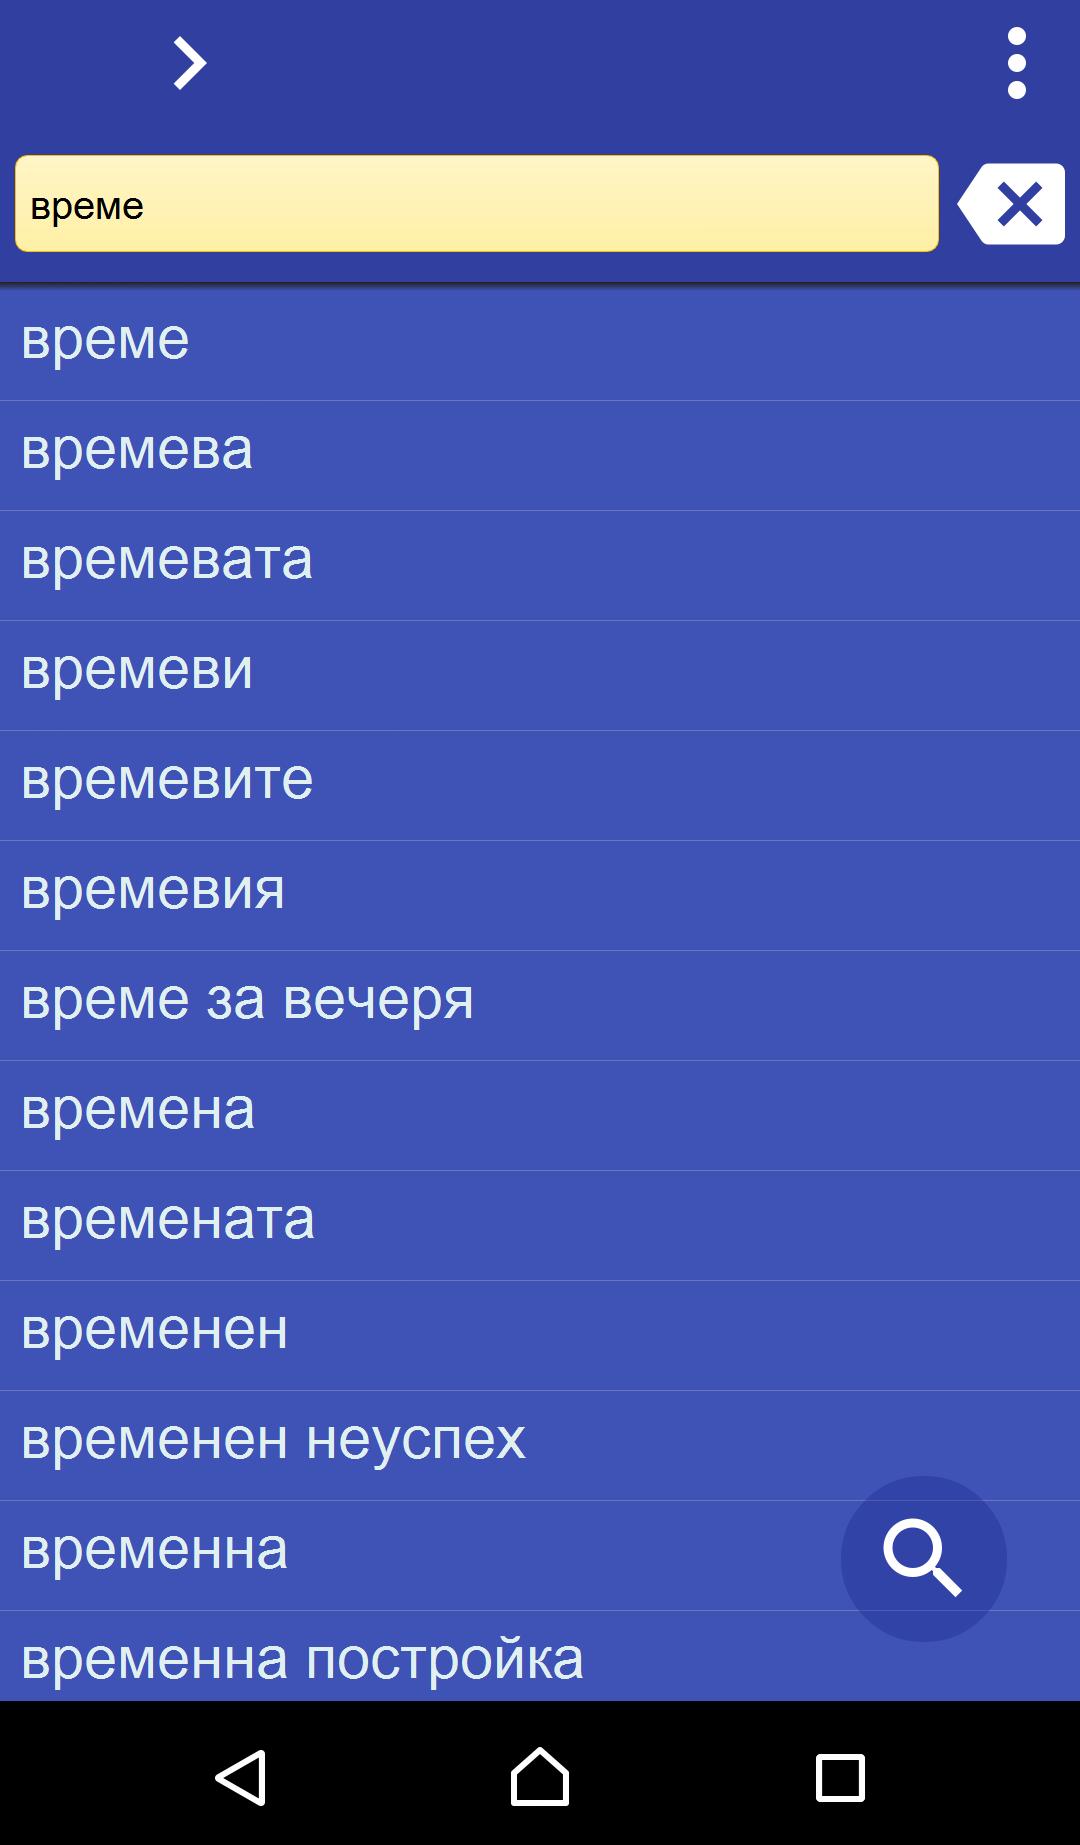 Bułgarsko-Polski słownik for Android - APK Download